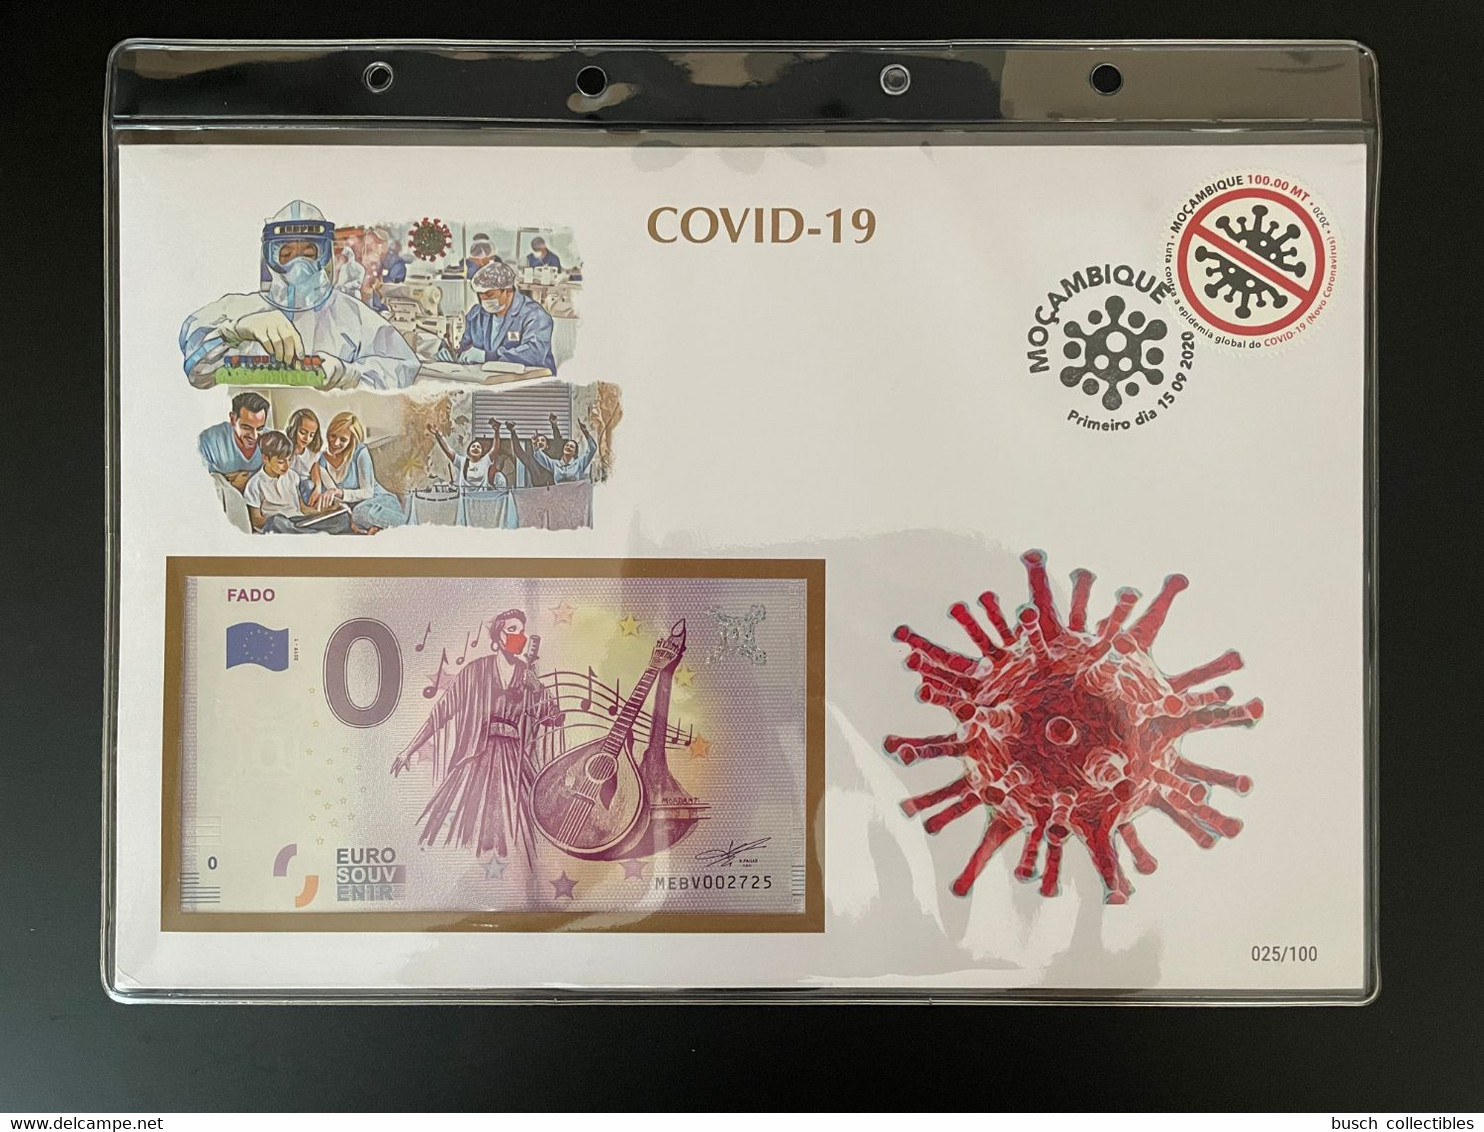 Euro Souvenir Banknote Cover COVID-19 Pandémie Pandemic Fado Mozambique Banknotenbrief - Mozambique